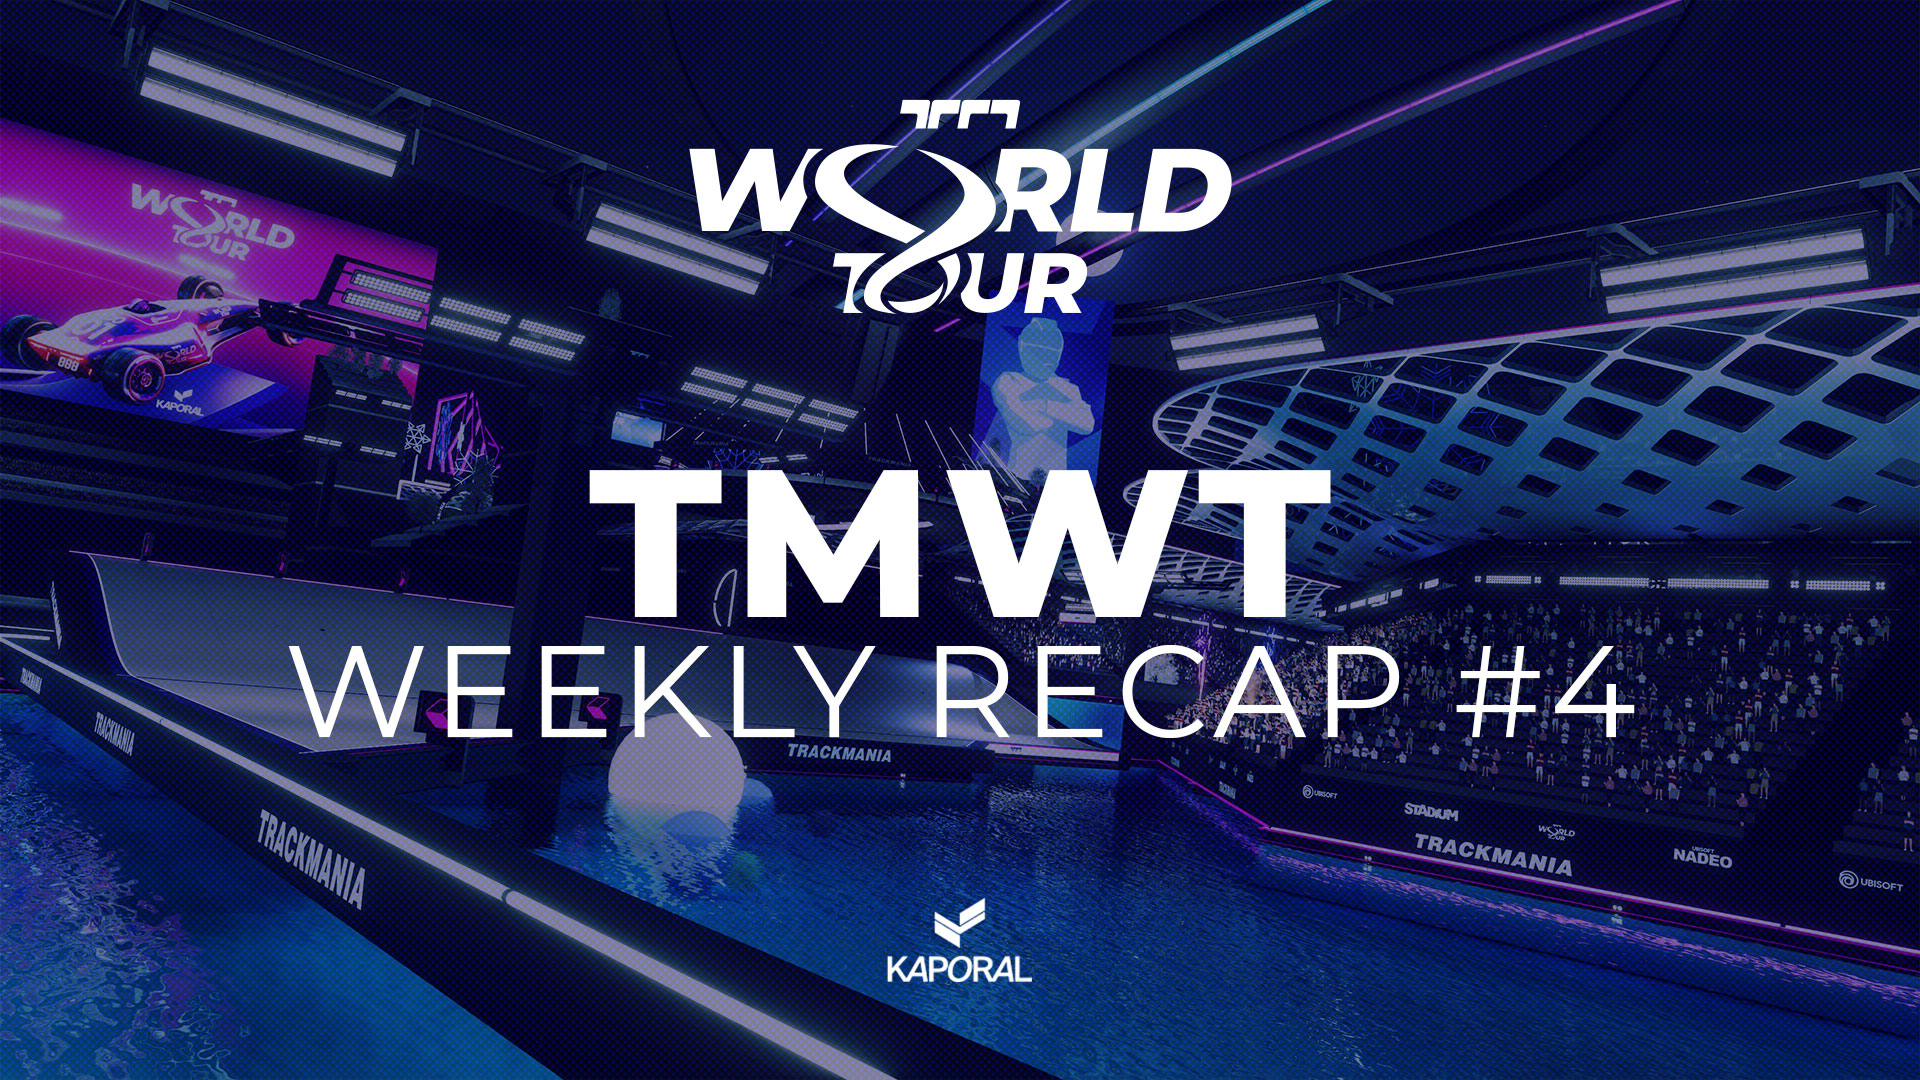 TMWT Stage 1 Weekly Recap #4